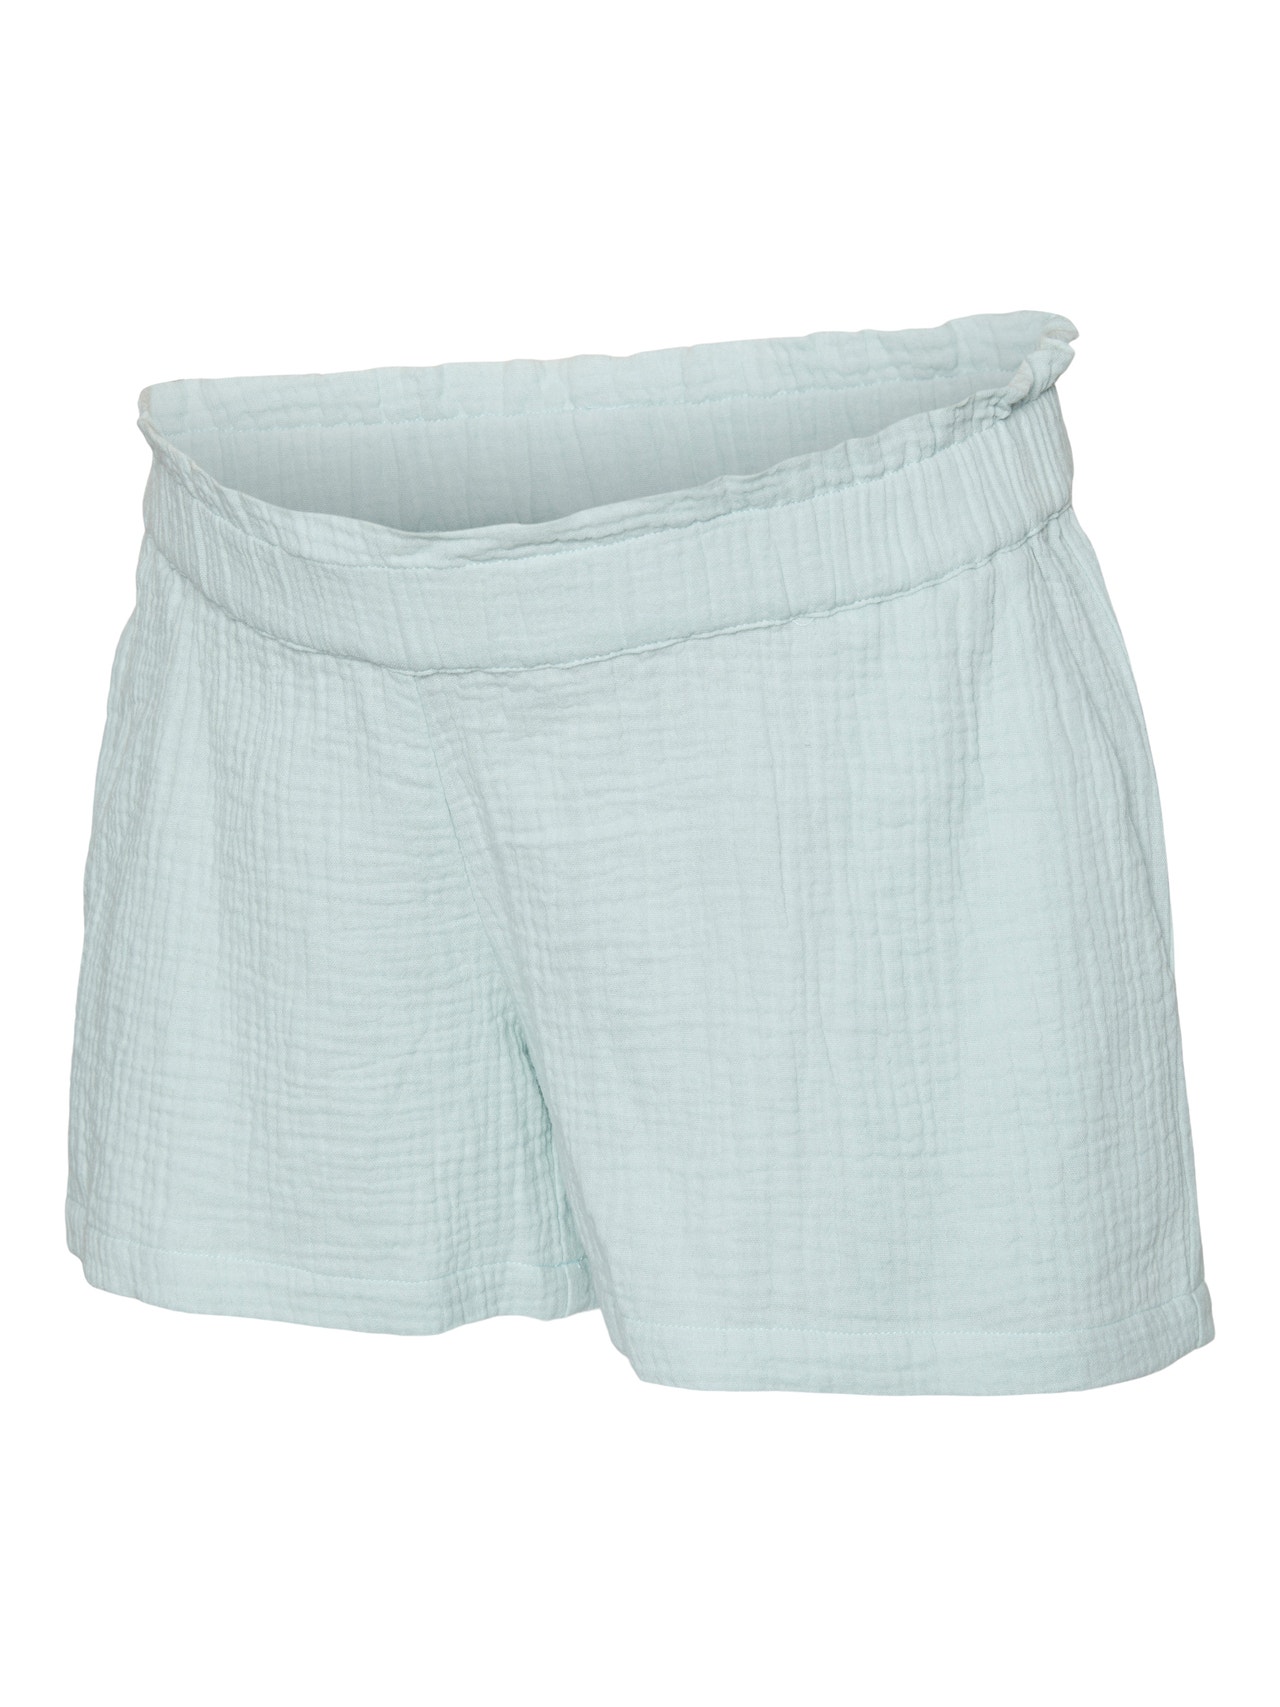 MAMA.LICIOUS Vente-shorts -Hint of Mint - 20019896